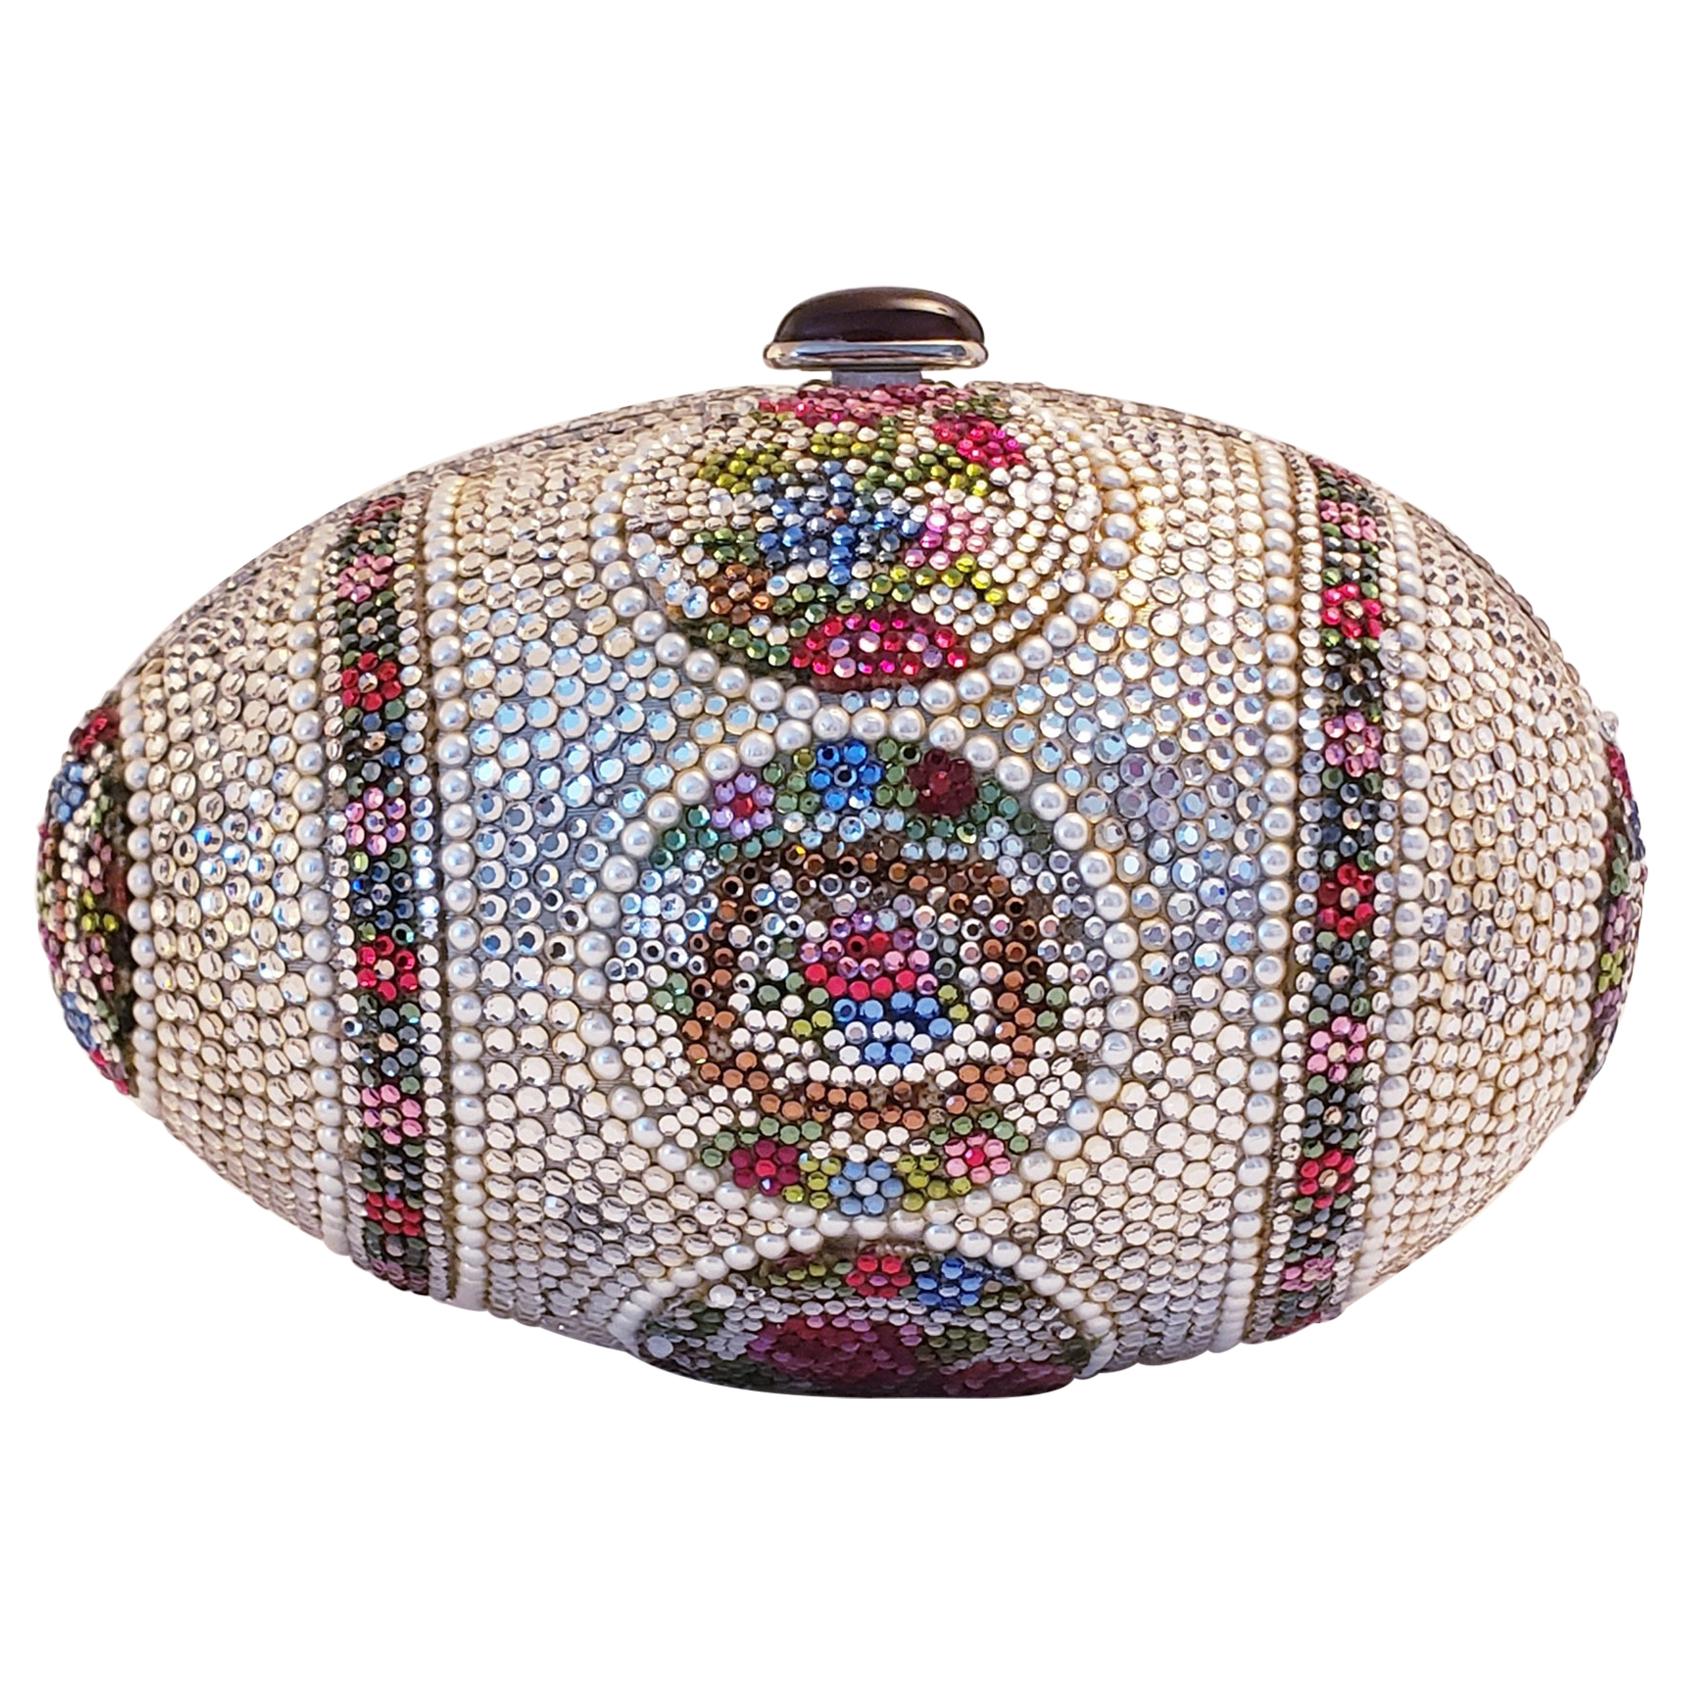 Judith Leiber Faberge Egg Minaudiere Clutch Shoulder Bag Swarovski Crystals For Sale